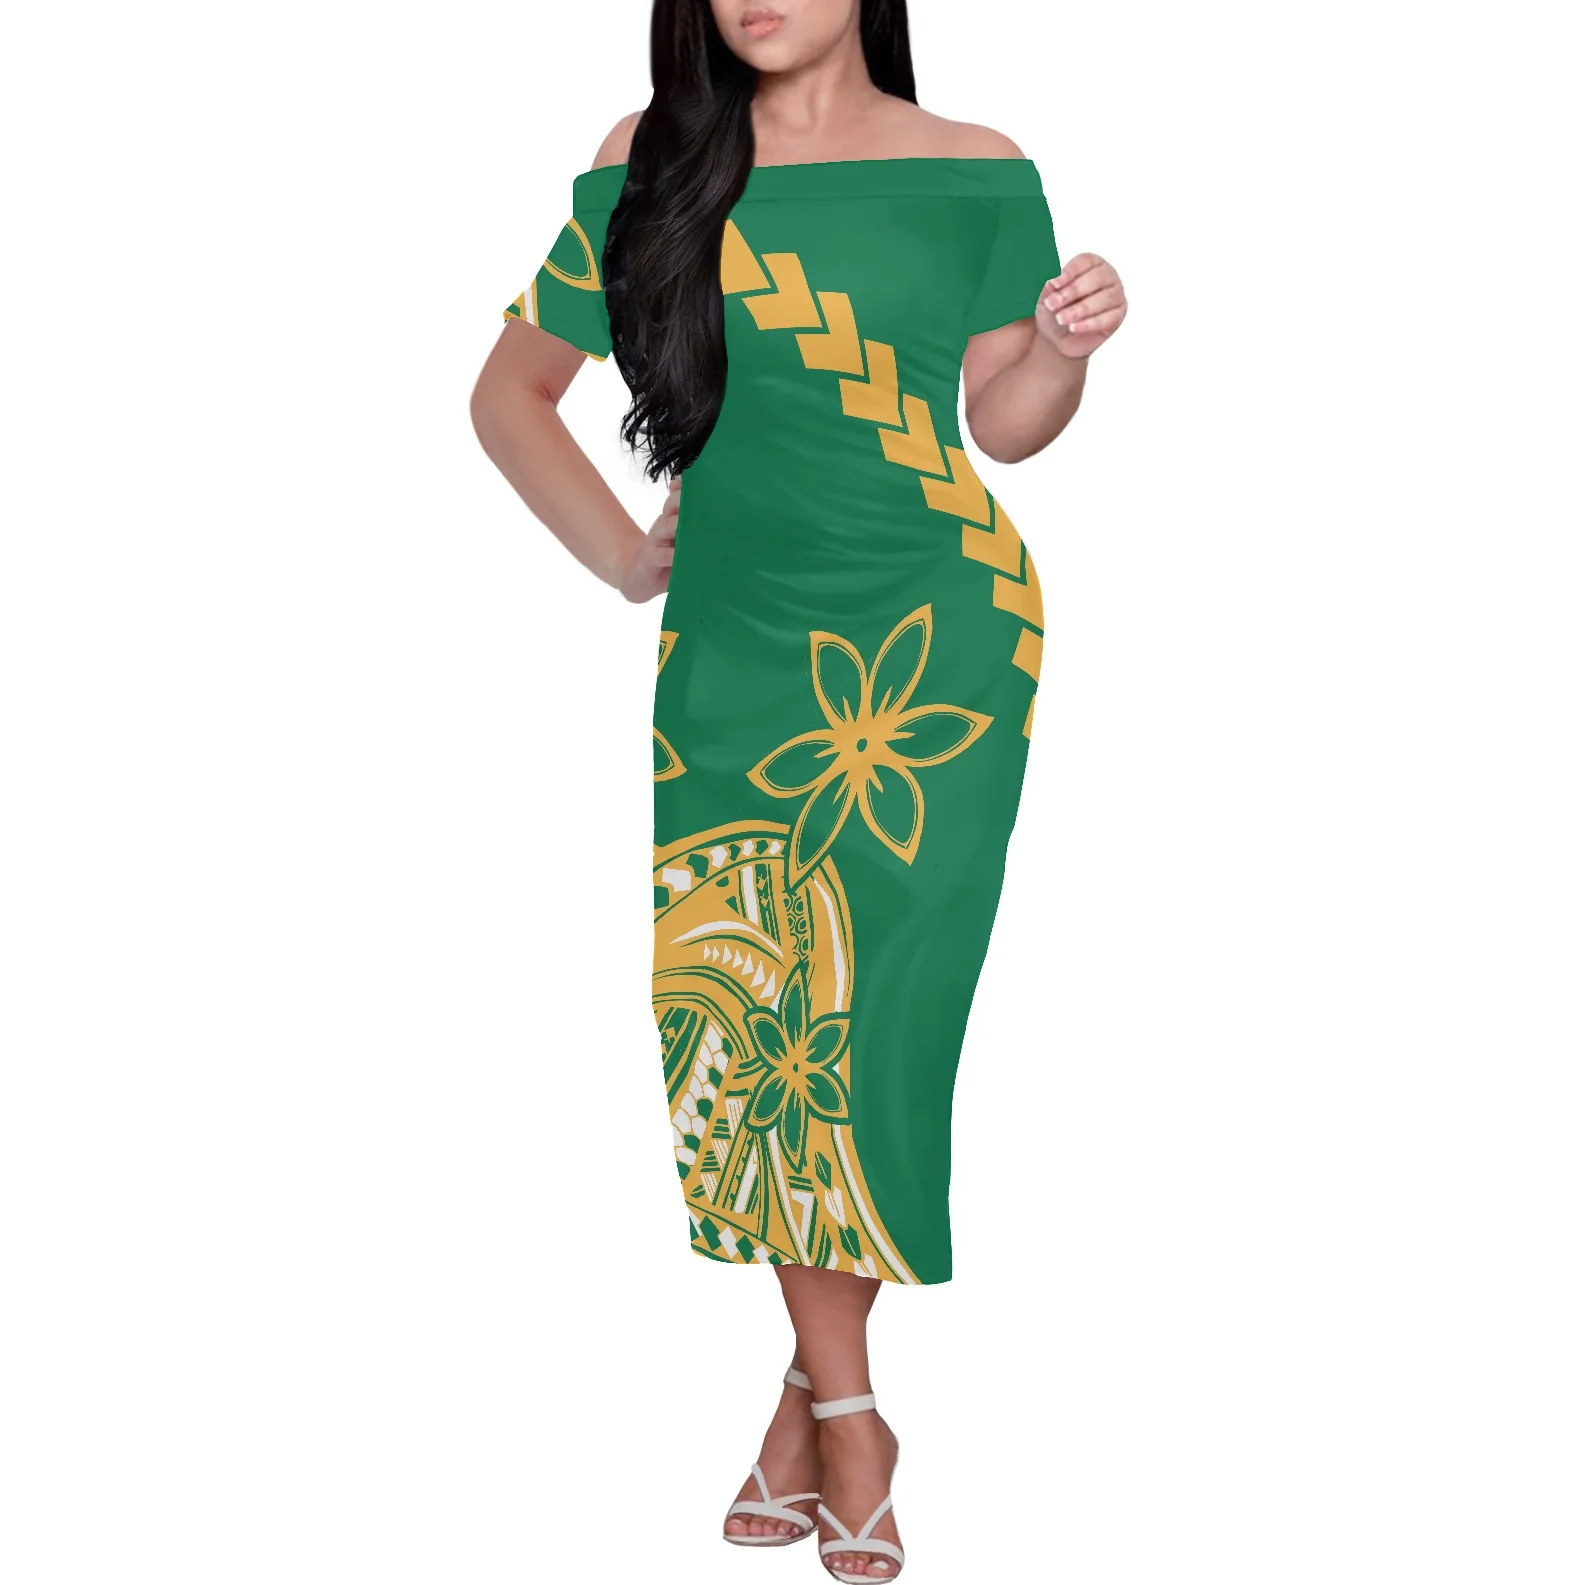 

Женское платье с открытыми плечами HYCOOL, летнее зеленое платье для выпускного вечера, повседневная женская одежда с принтом гибискуса, полинезийский Племенной Стиль, Новое поступление 2022